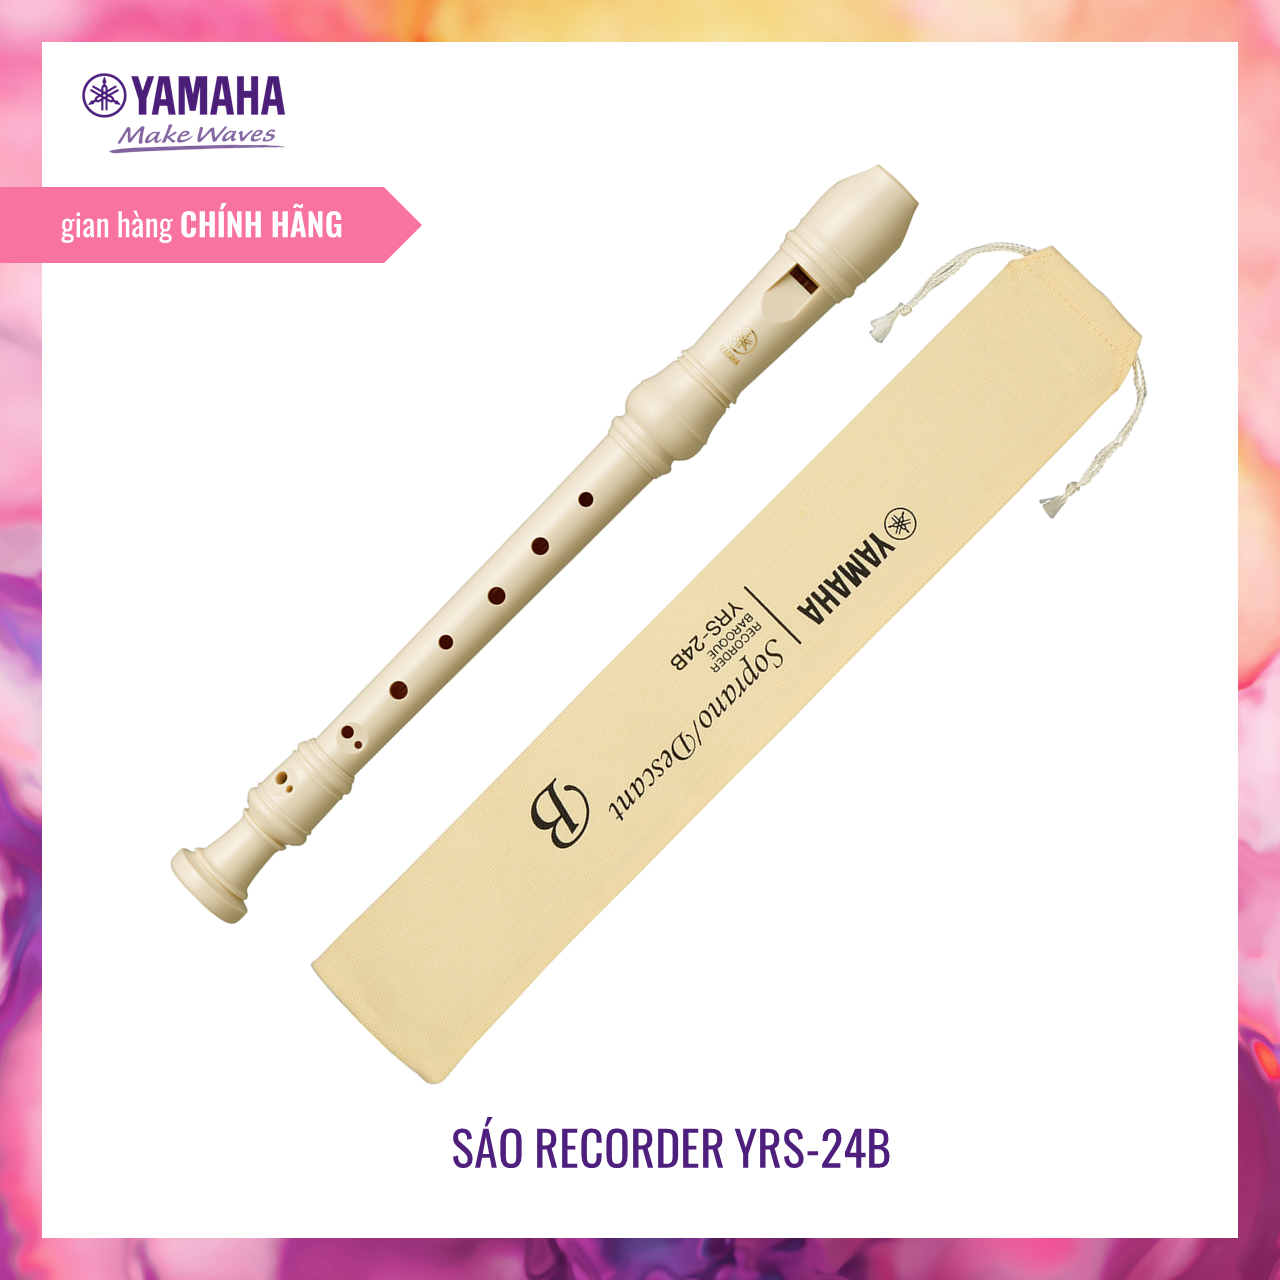 Sáo dọc Recorder Yamaha YRS-24B – Nốt thổi Baroque – Nguyên liệu đáp ứng tiêu chuẩn quốc tế, được đưa vào chương trình giáo dục âm nhạc – Tháo lắp vệ sinh dễ dàng – Tặng phụ kiện túi đựng Recorder – Bảo hành chính hãng 12 tháng